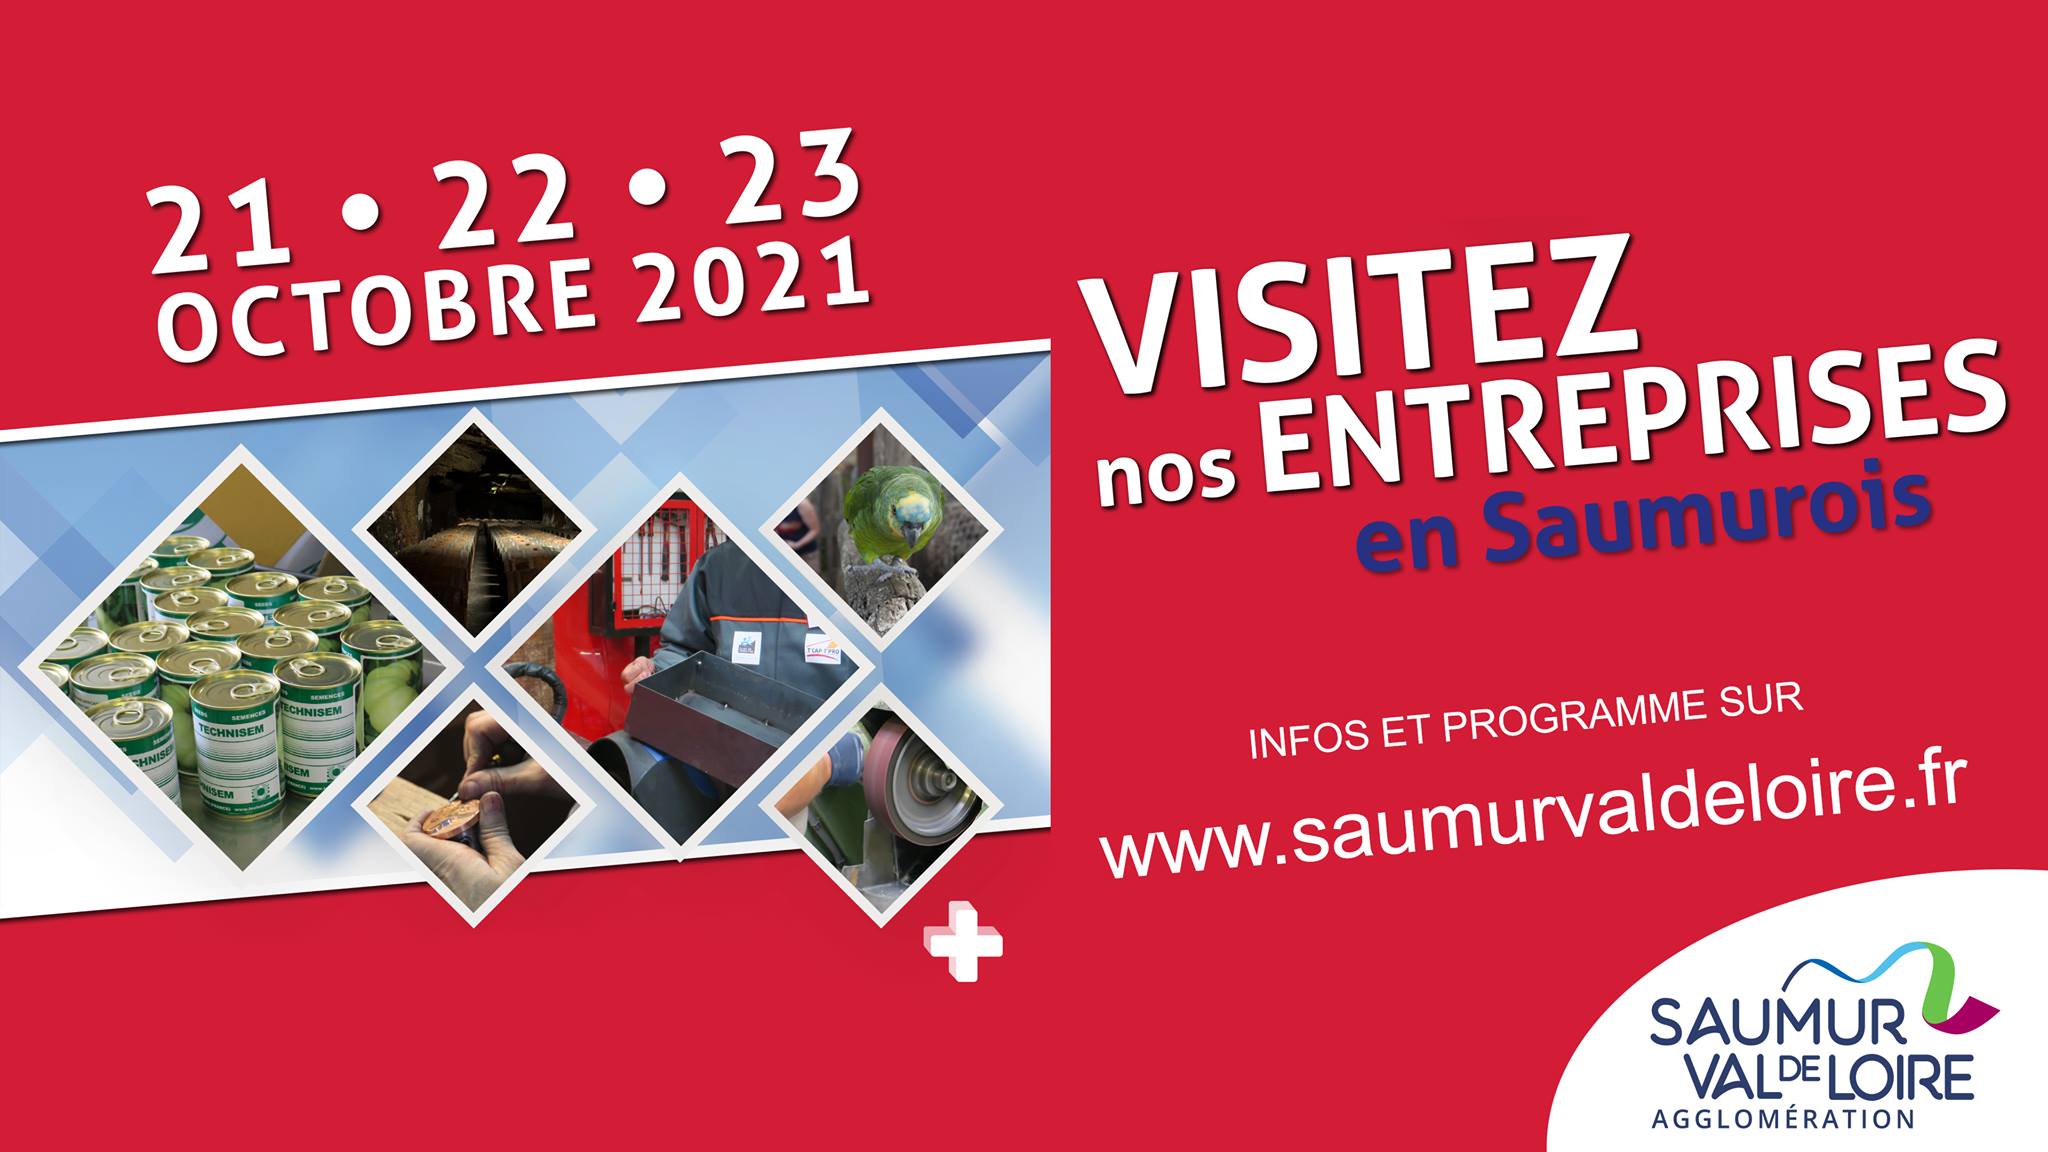 Visitez nos entreprises en Saumurois